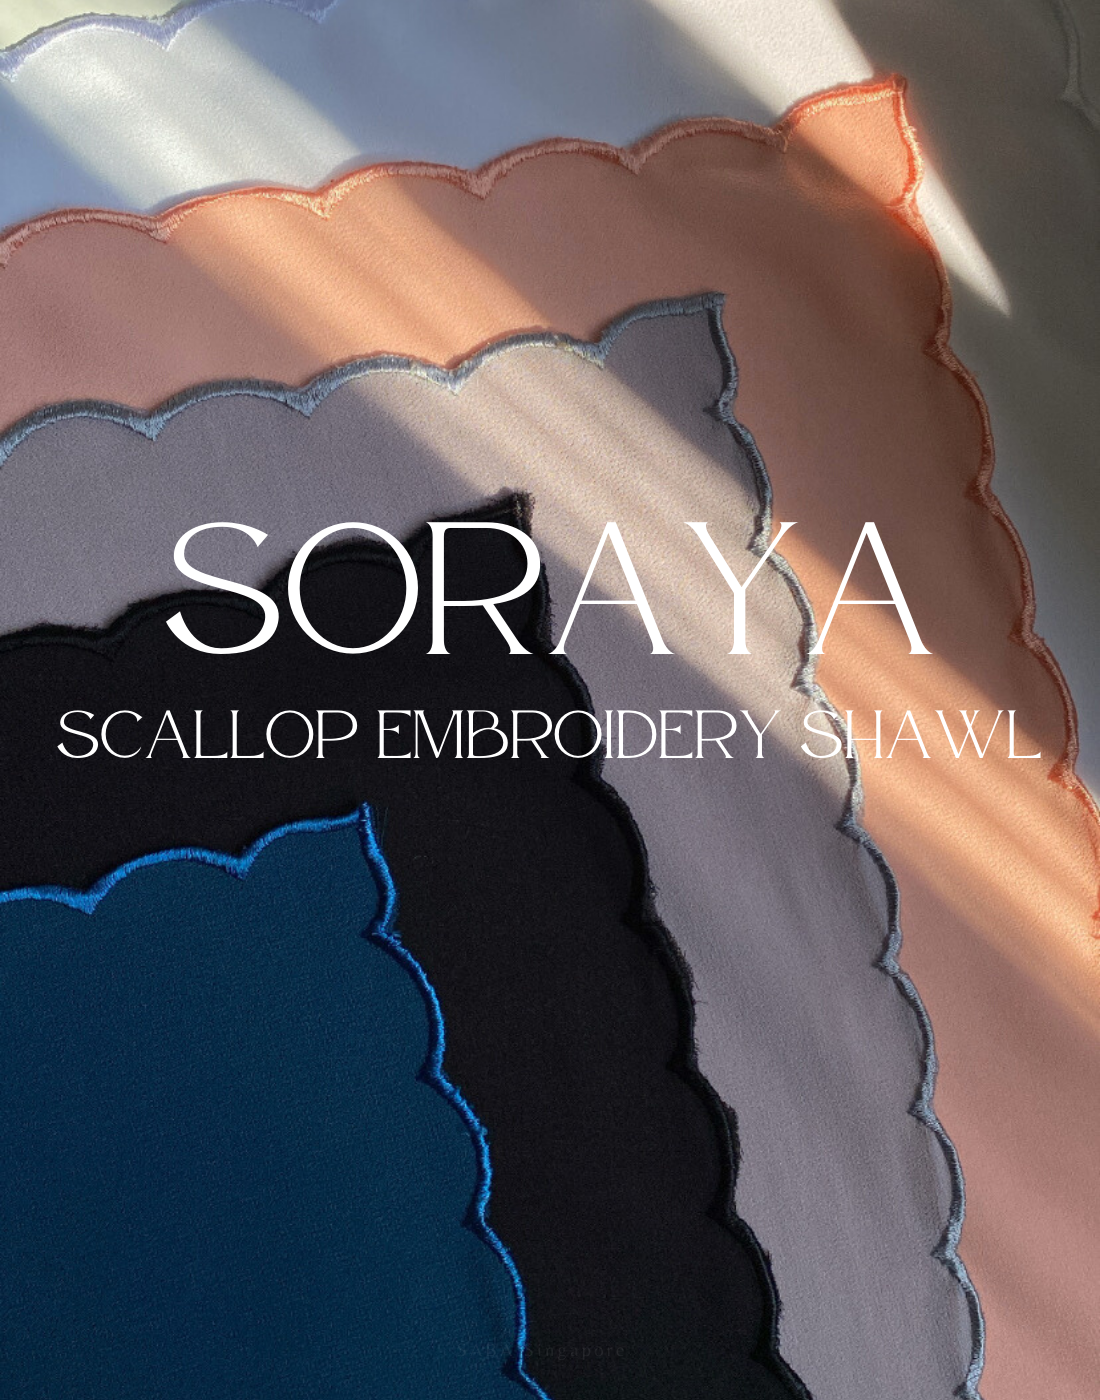 Soraya Scallop Embroidery Shawl